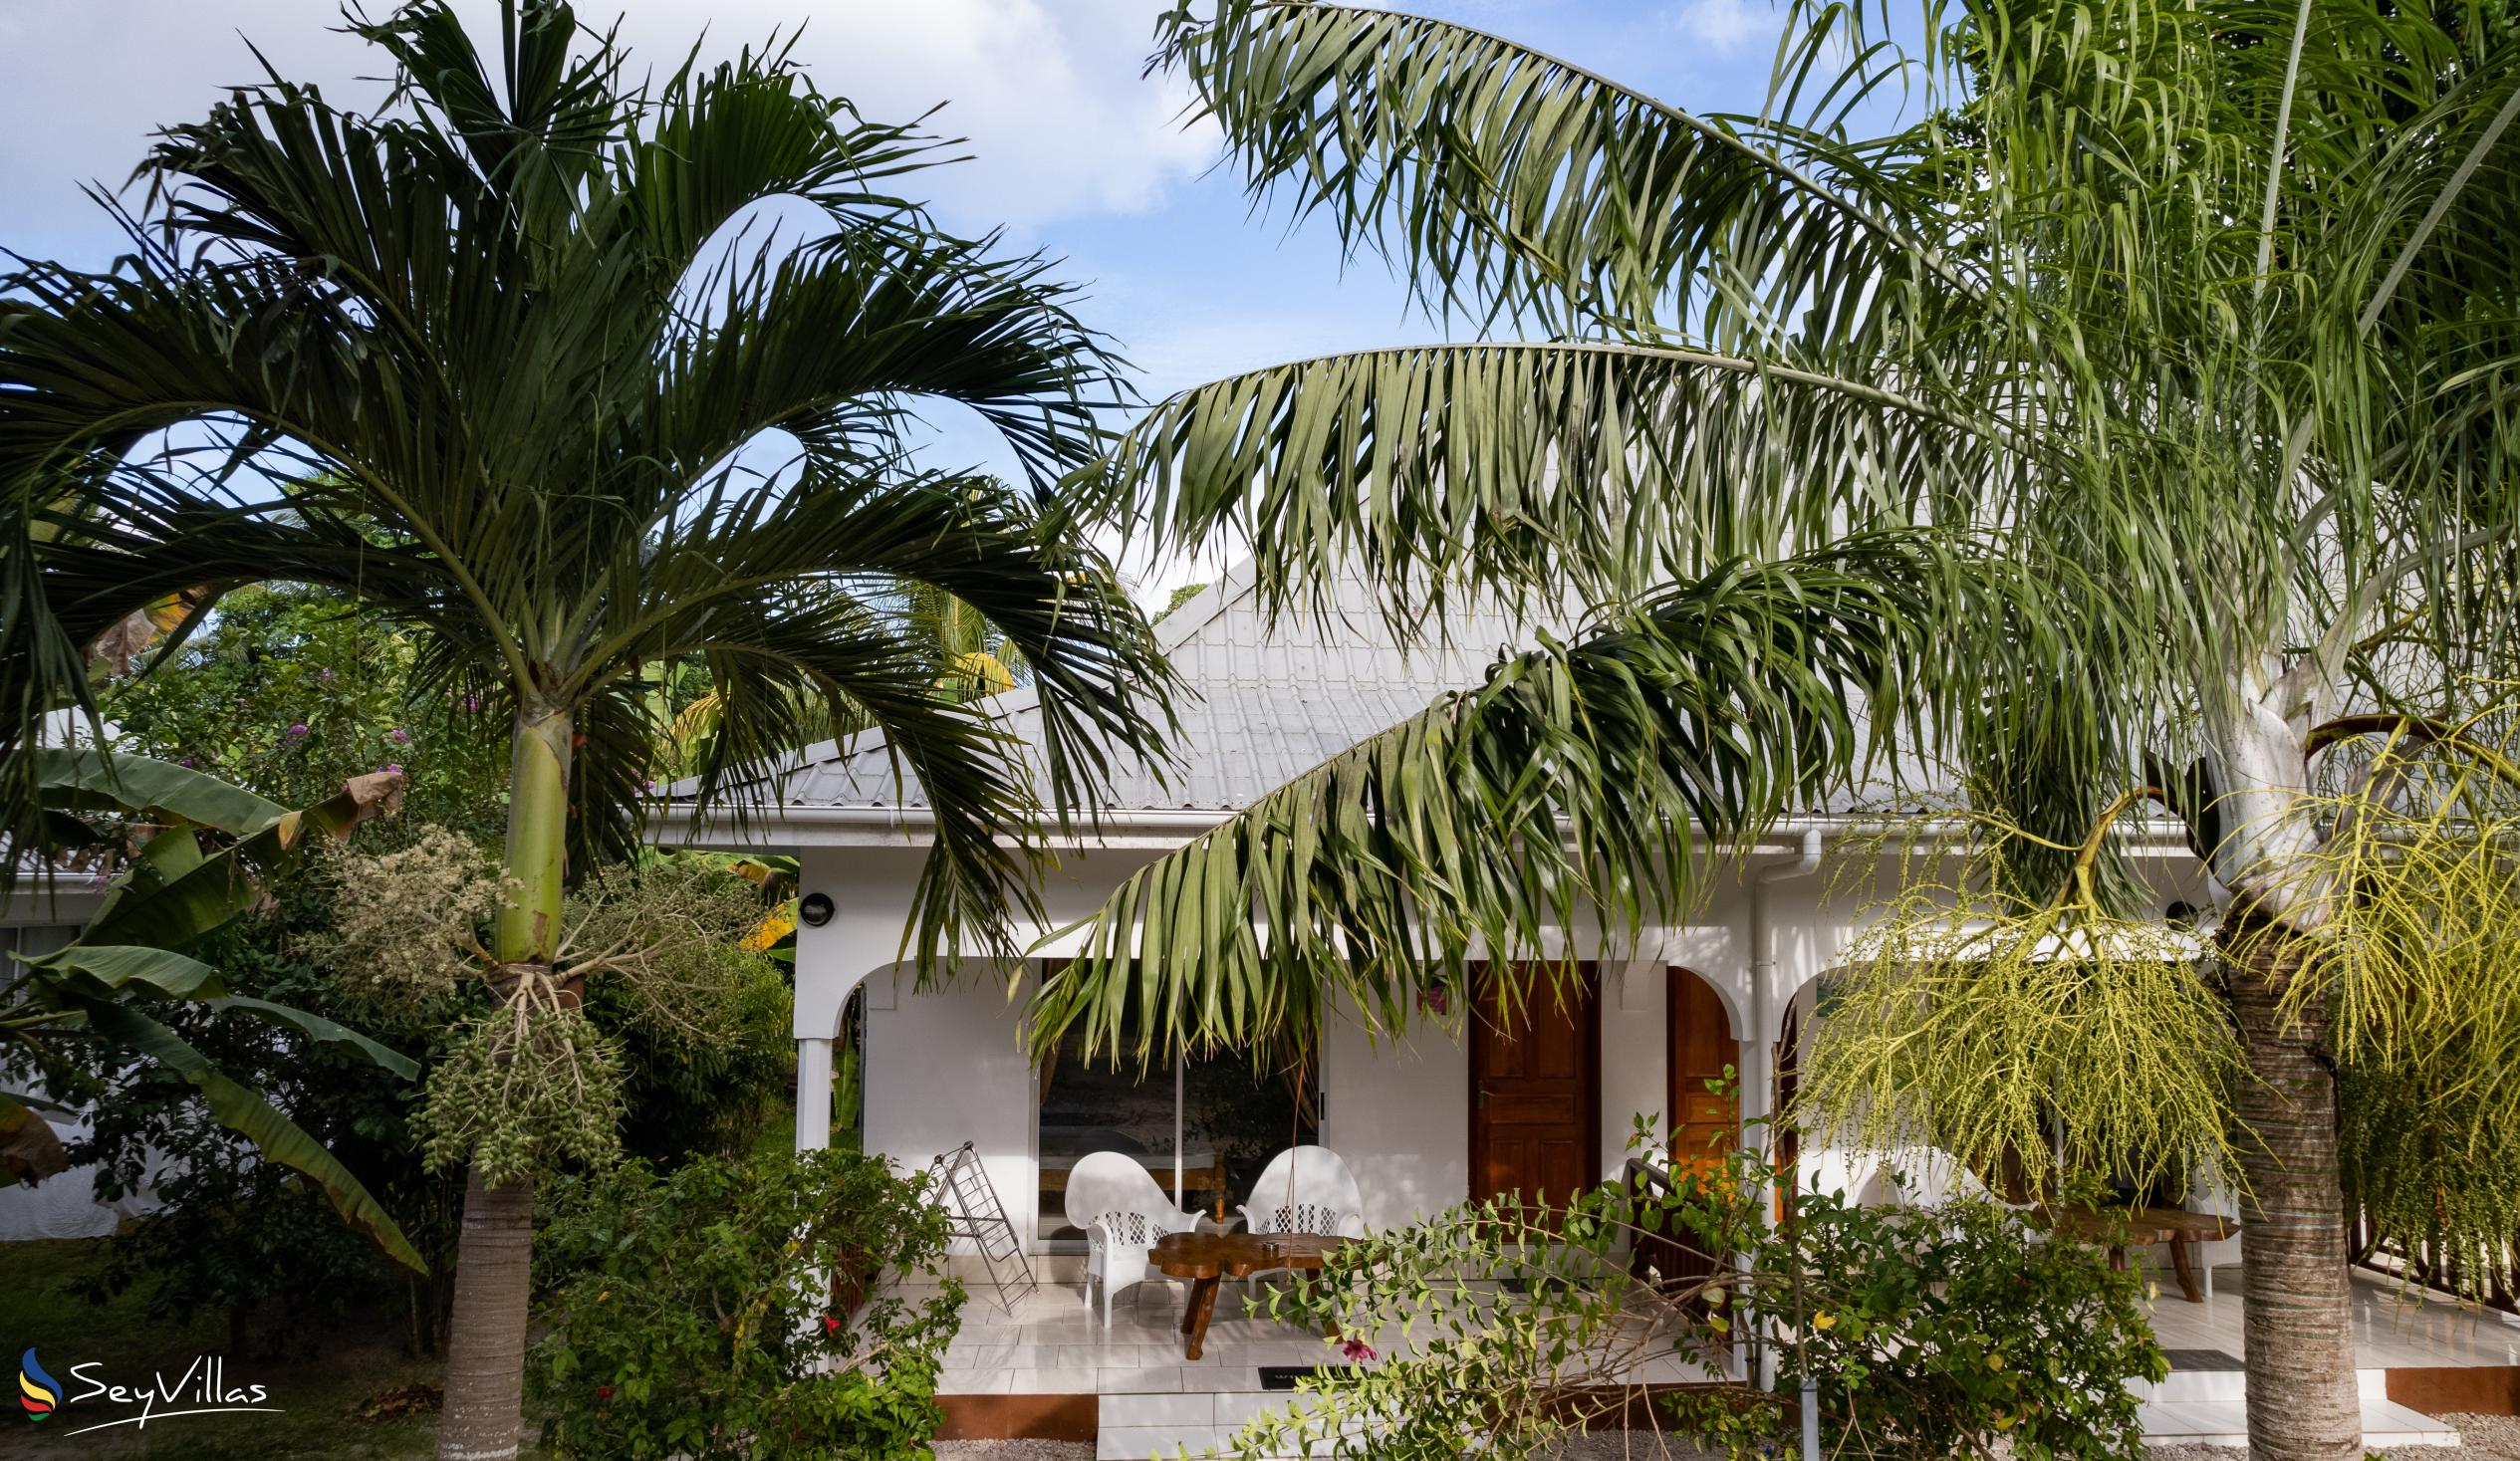 Foto 11: Villa Veuve - Aussenbereich - La Digue (Seychellen)